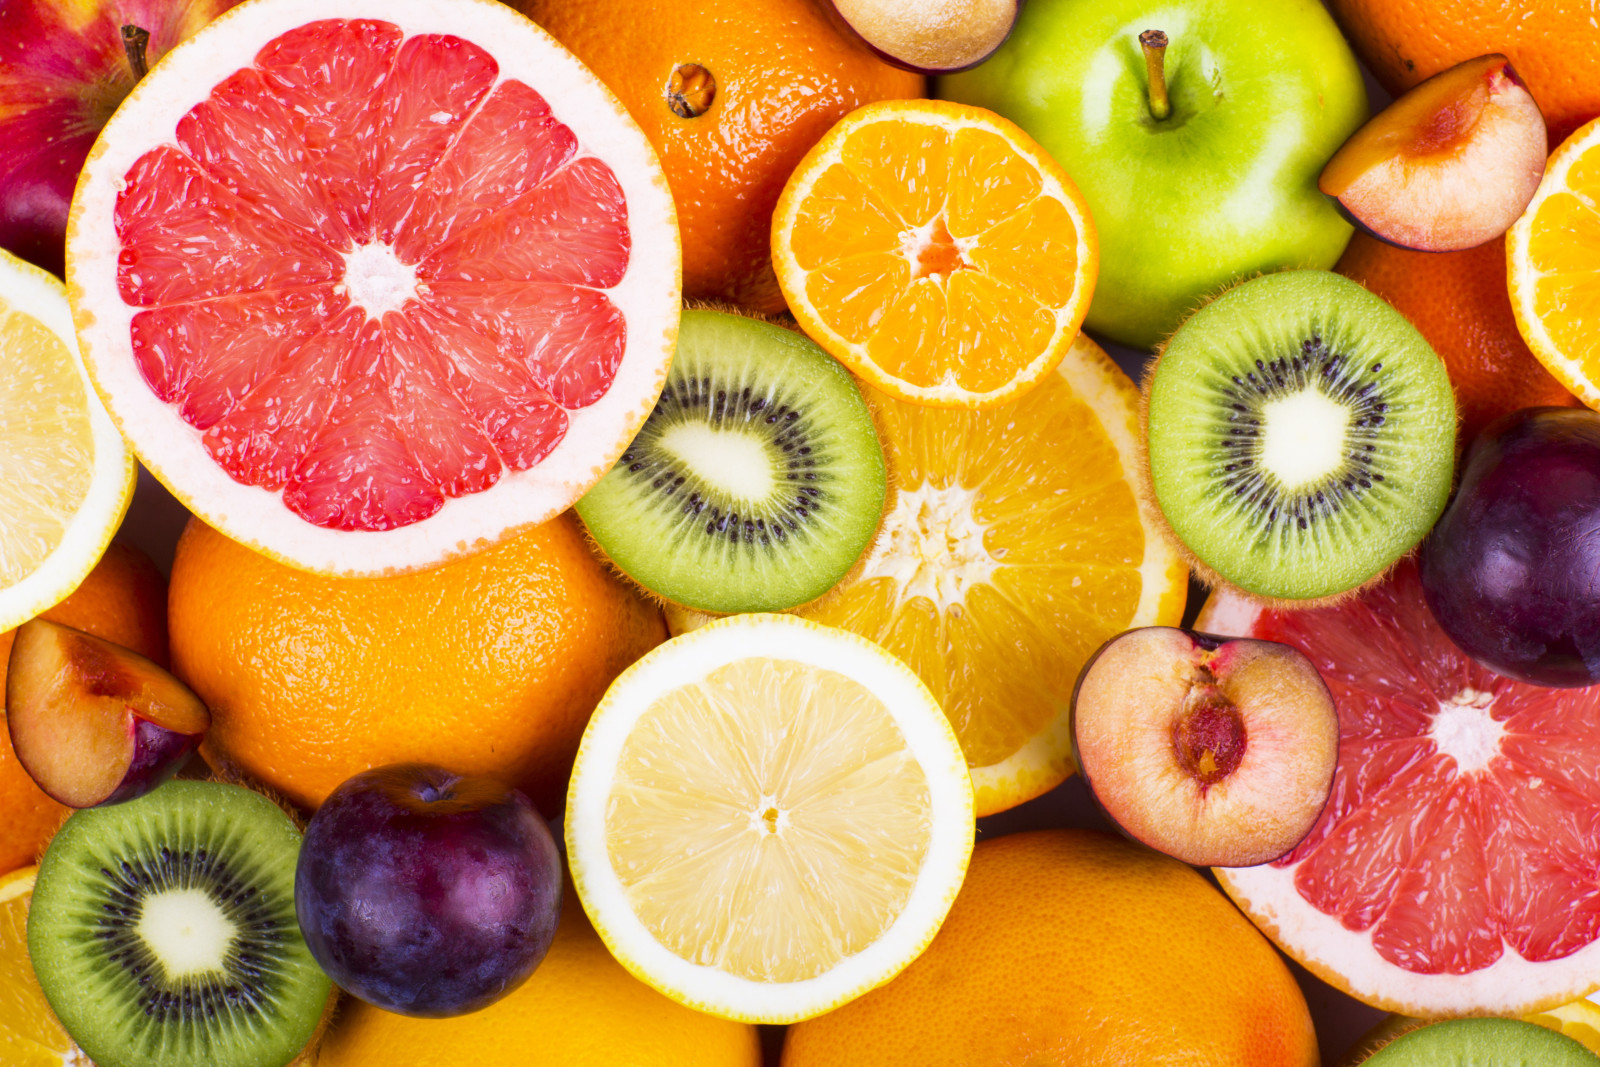 浆果, 新鲜, 橘子, 苹果, 猕猴桃, 水果, 葡萄柚, 水果